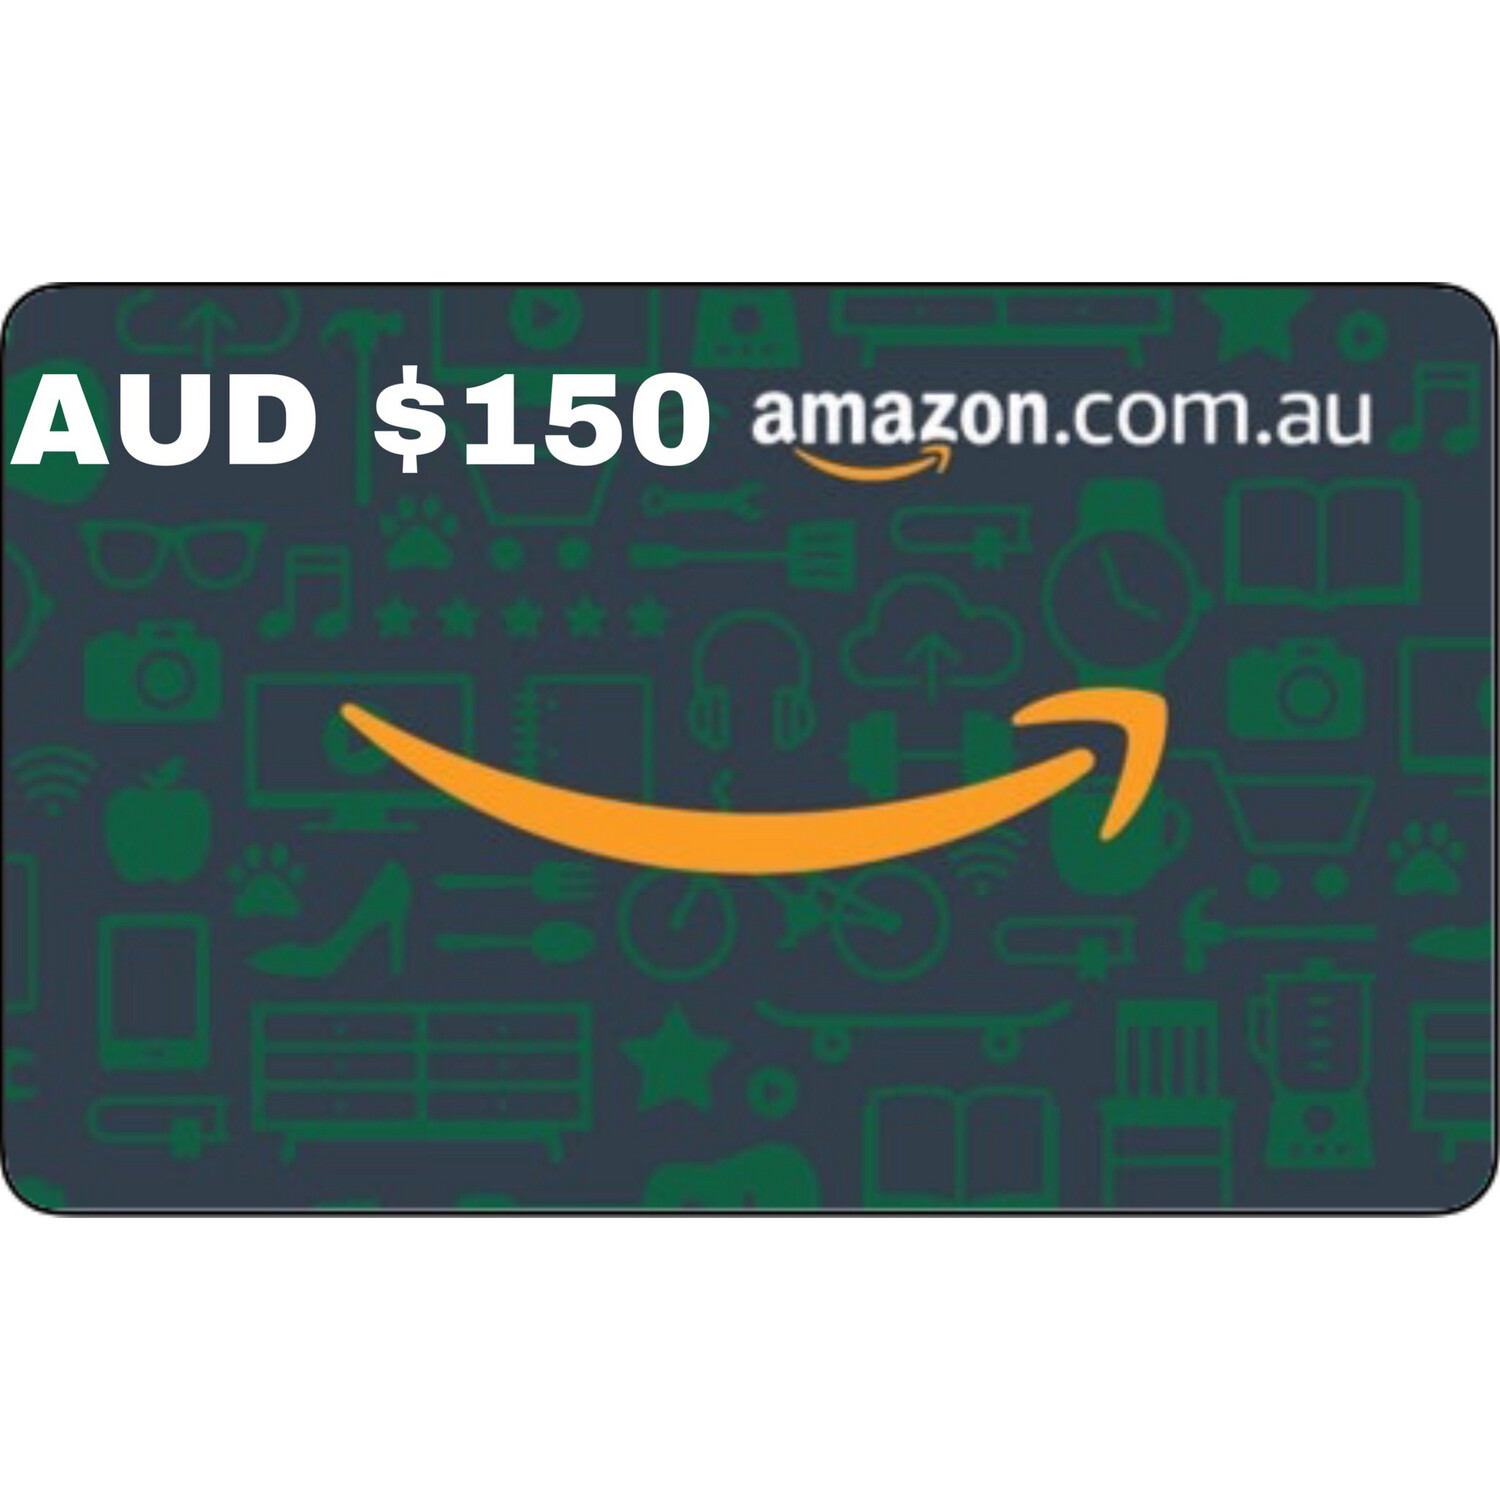 Amazon.com.au Gift Card Australia AUD $150